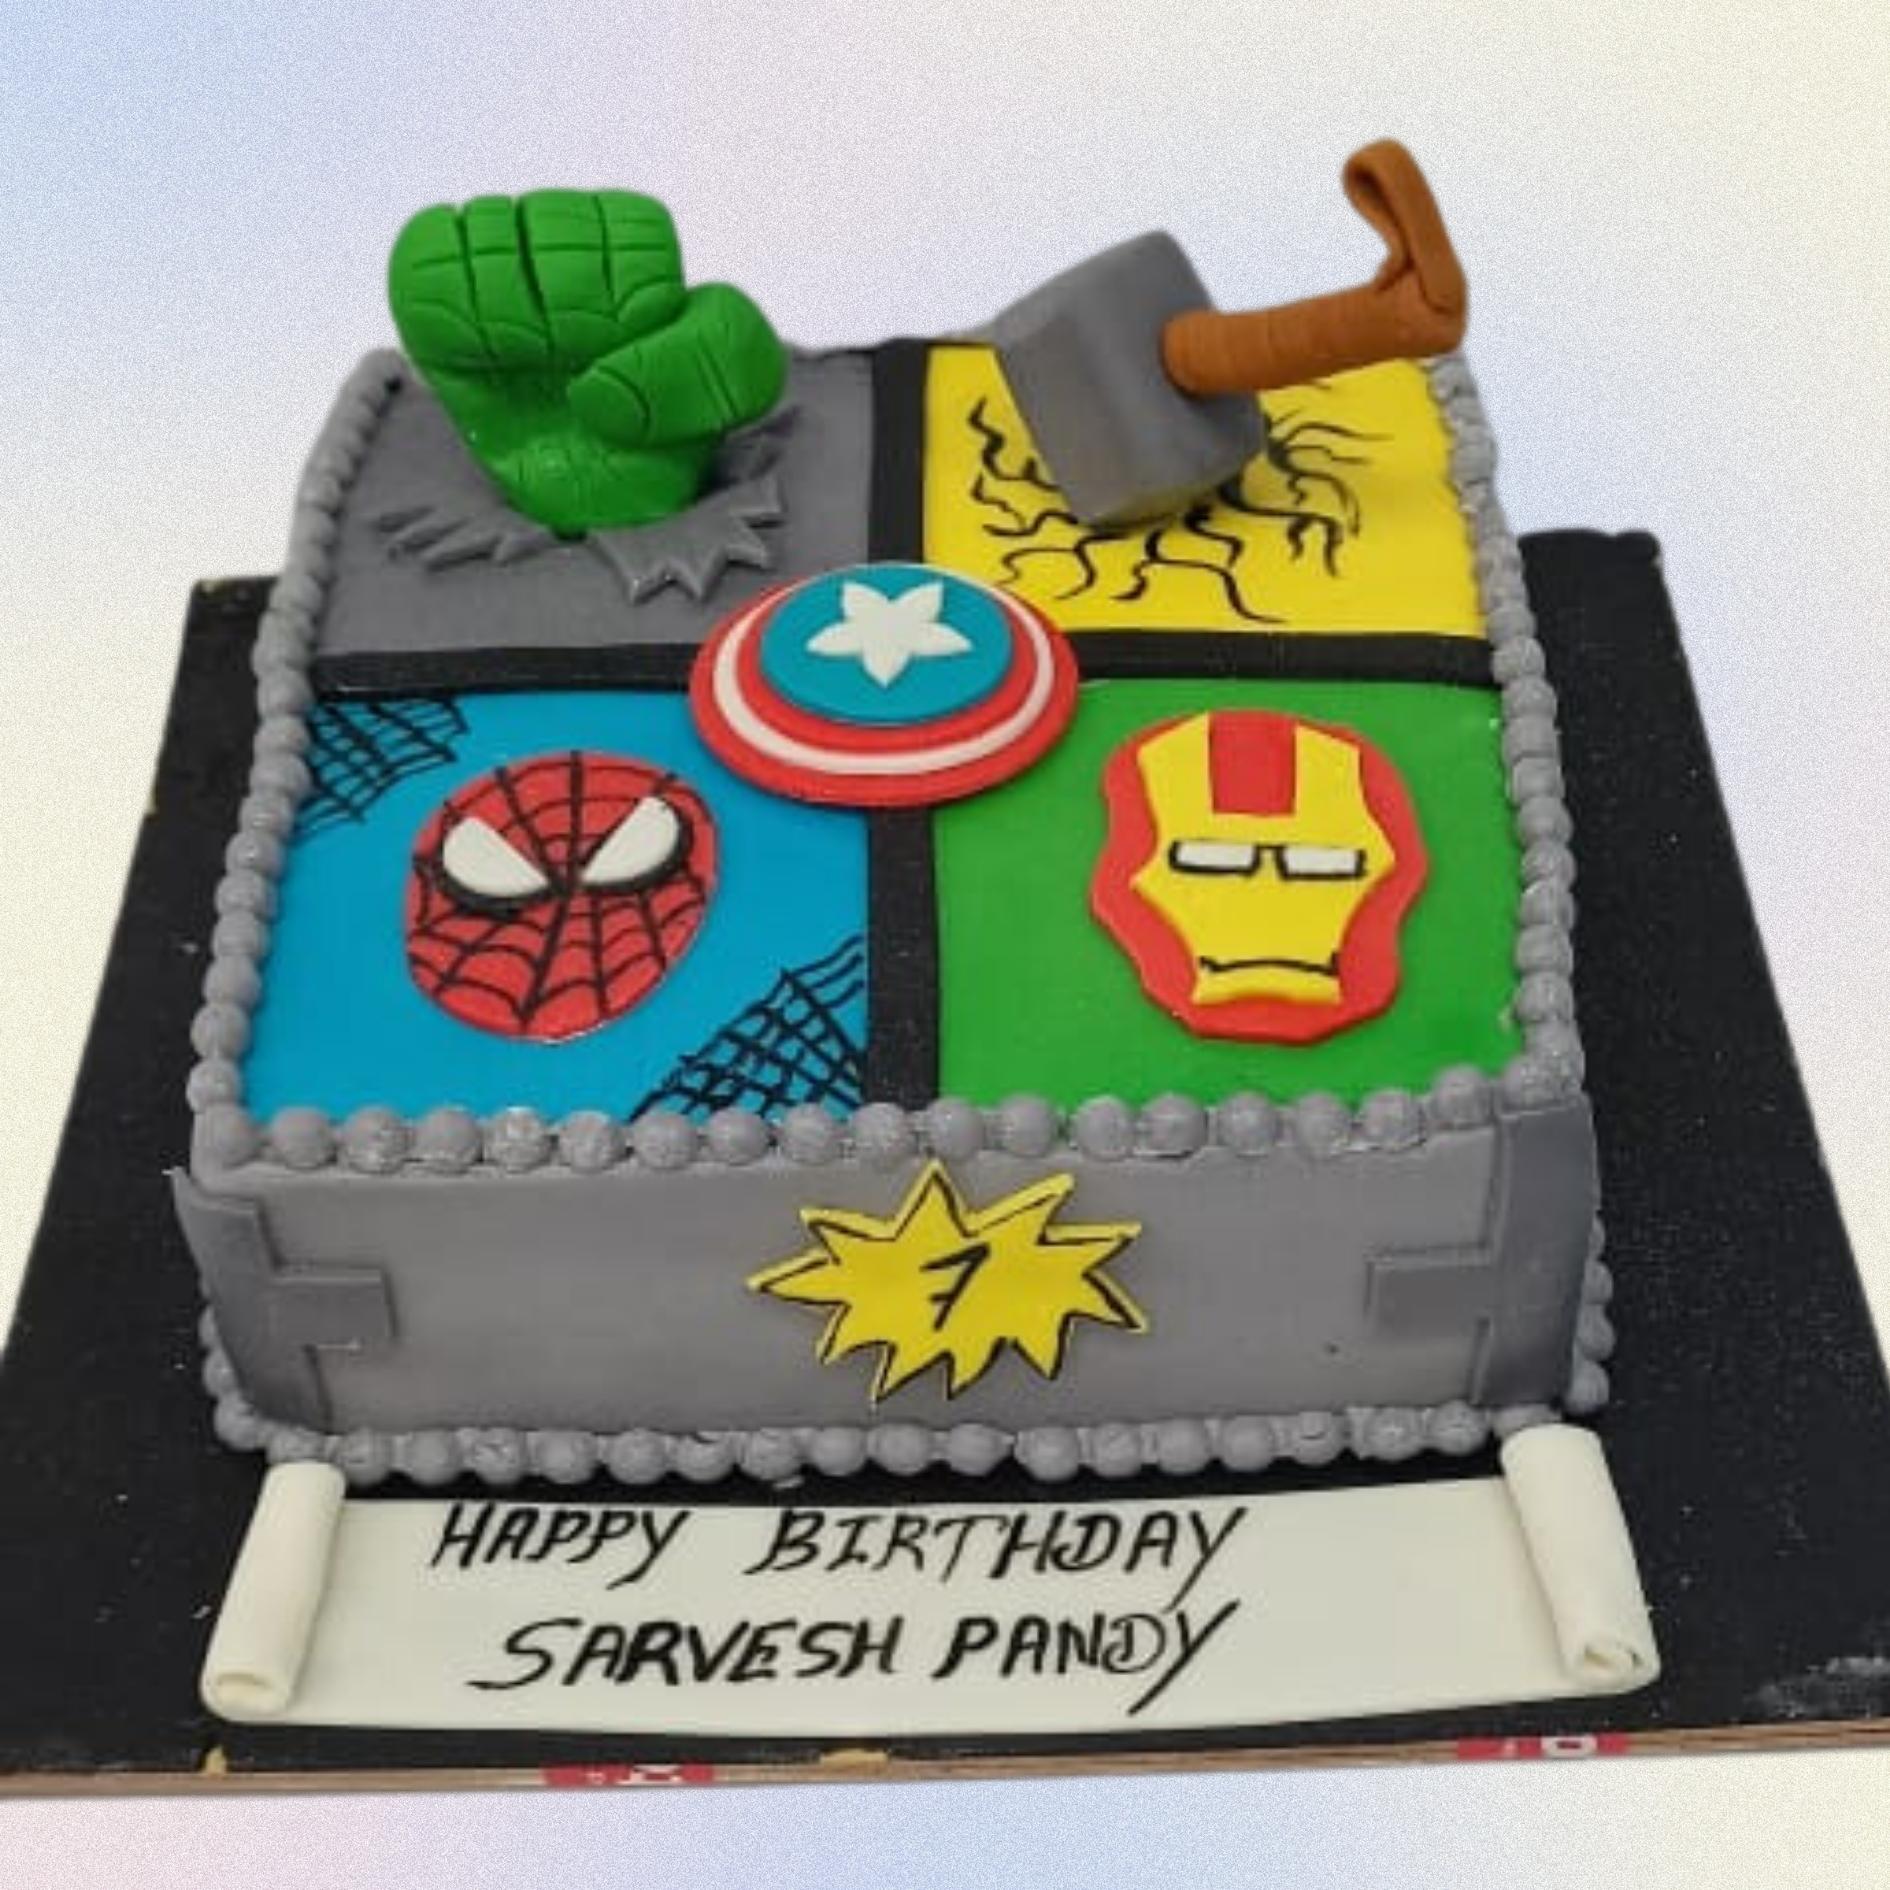 Birthday Cake 3D Illustration download in PNG, OBJ or Blend format